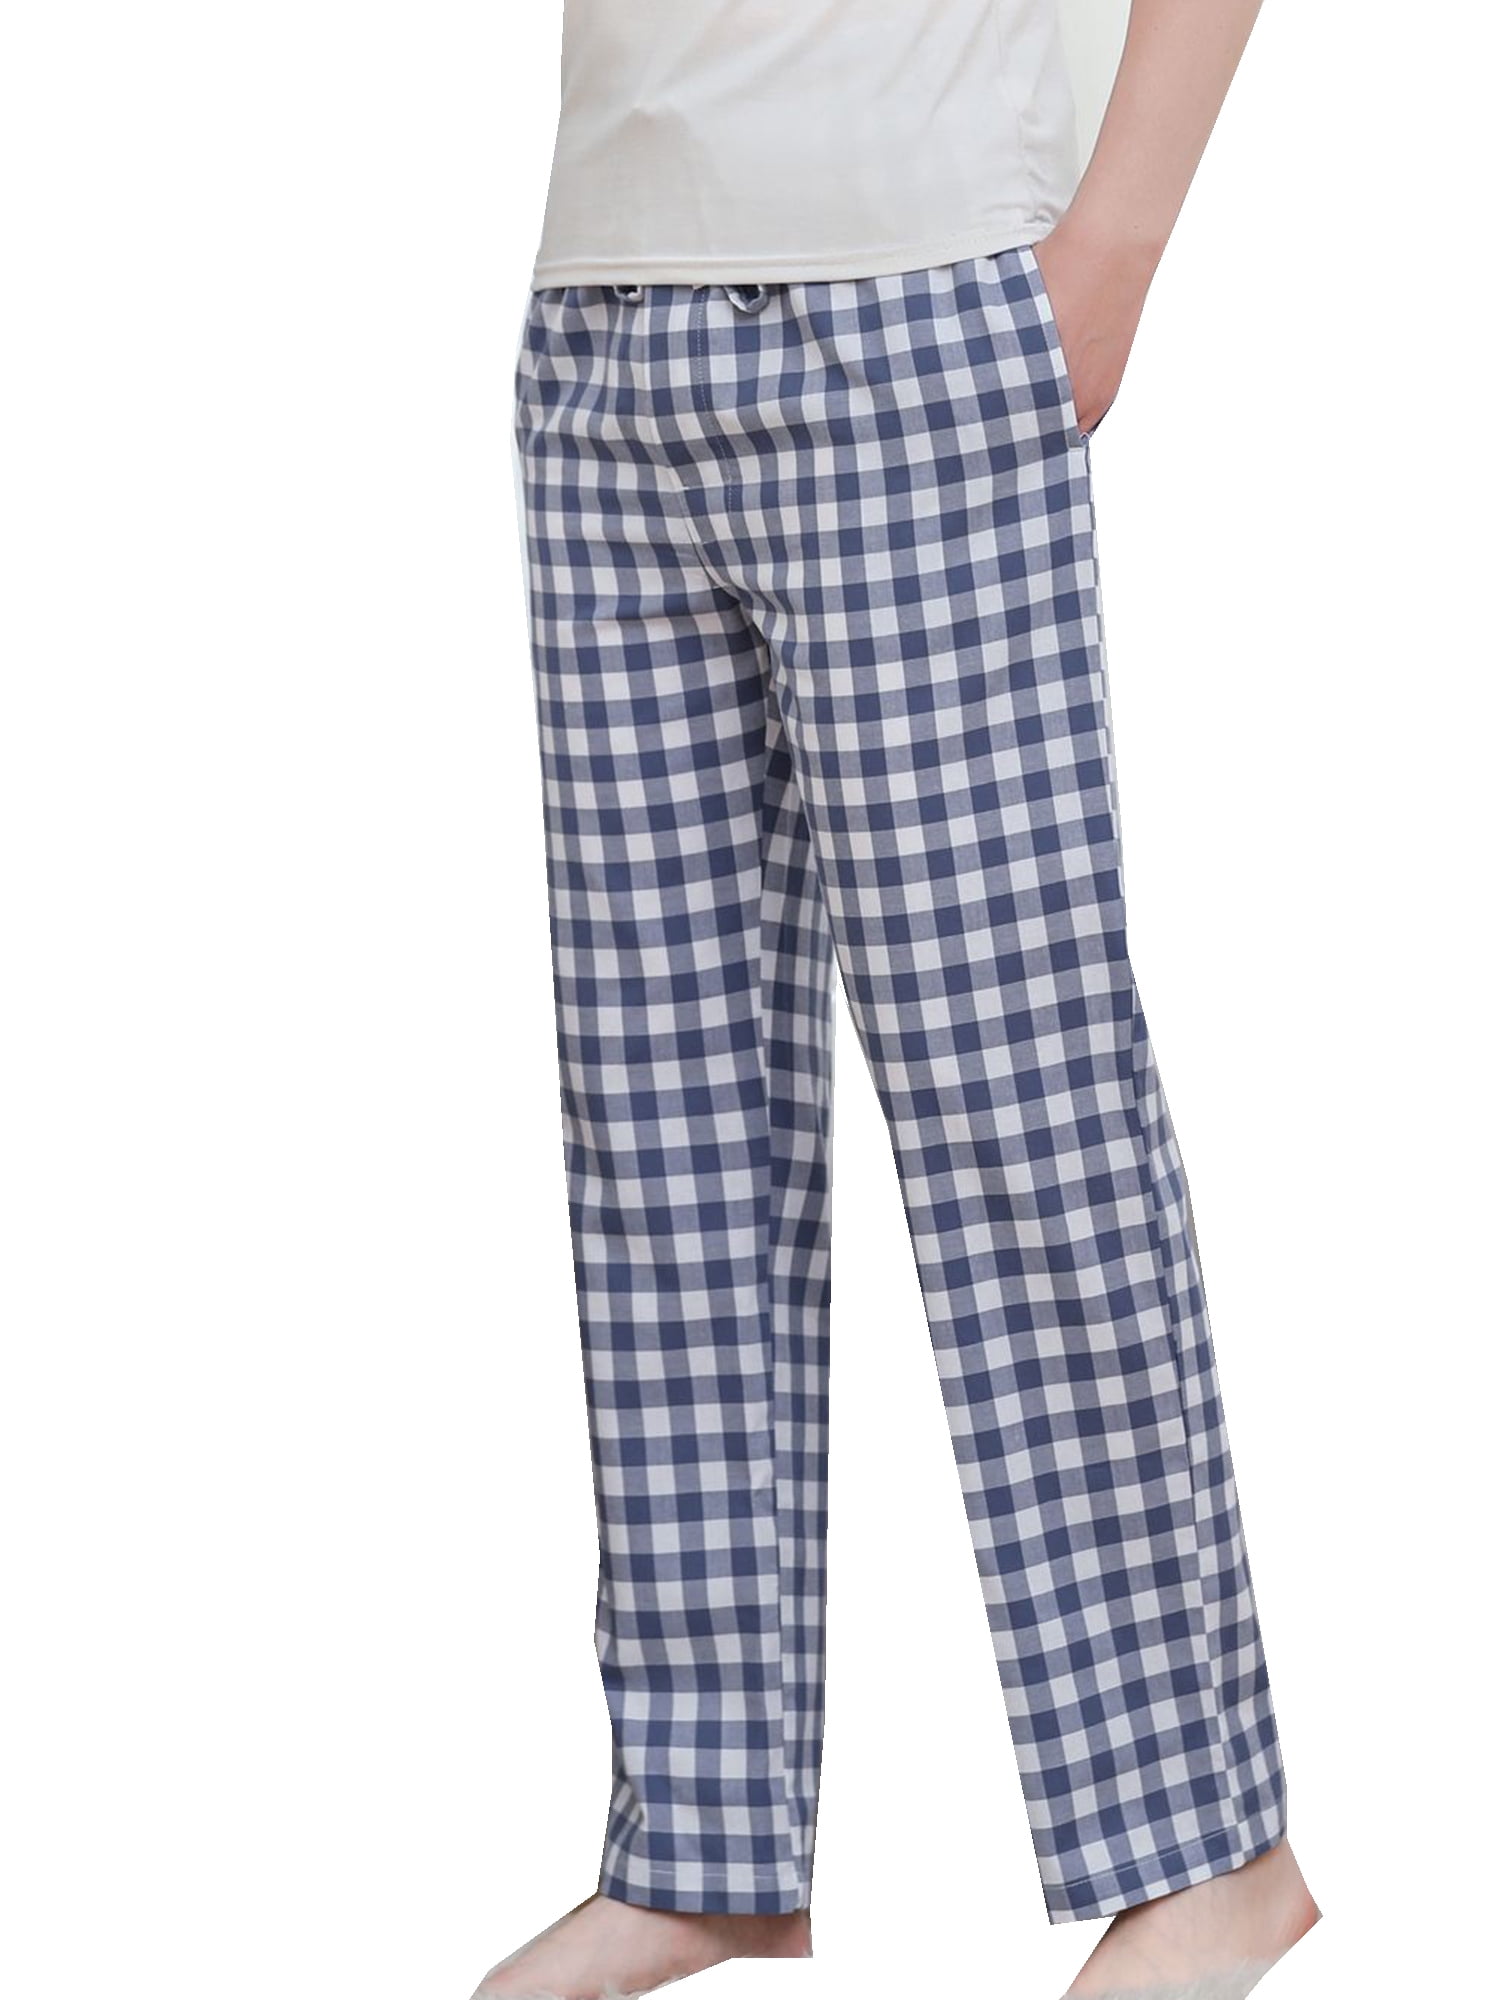 XL BRAND  NEW MARKS & SPENCER Men's Pyjamas PJ Set Official Star Wars Size L